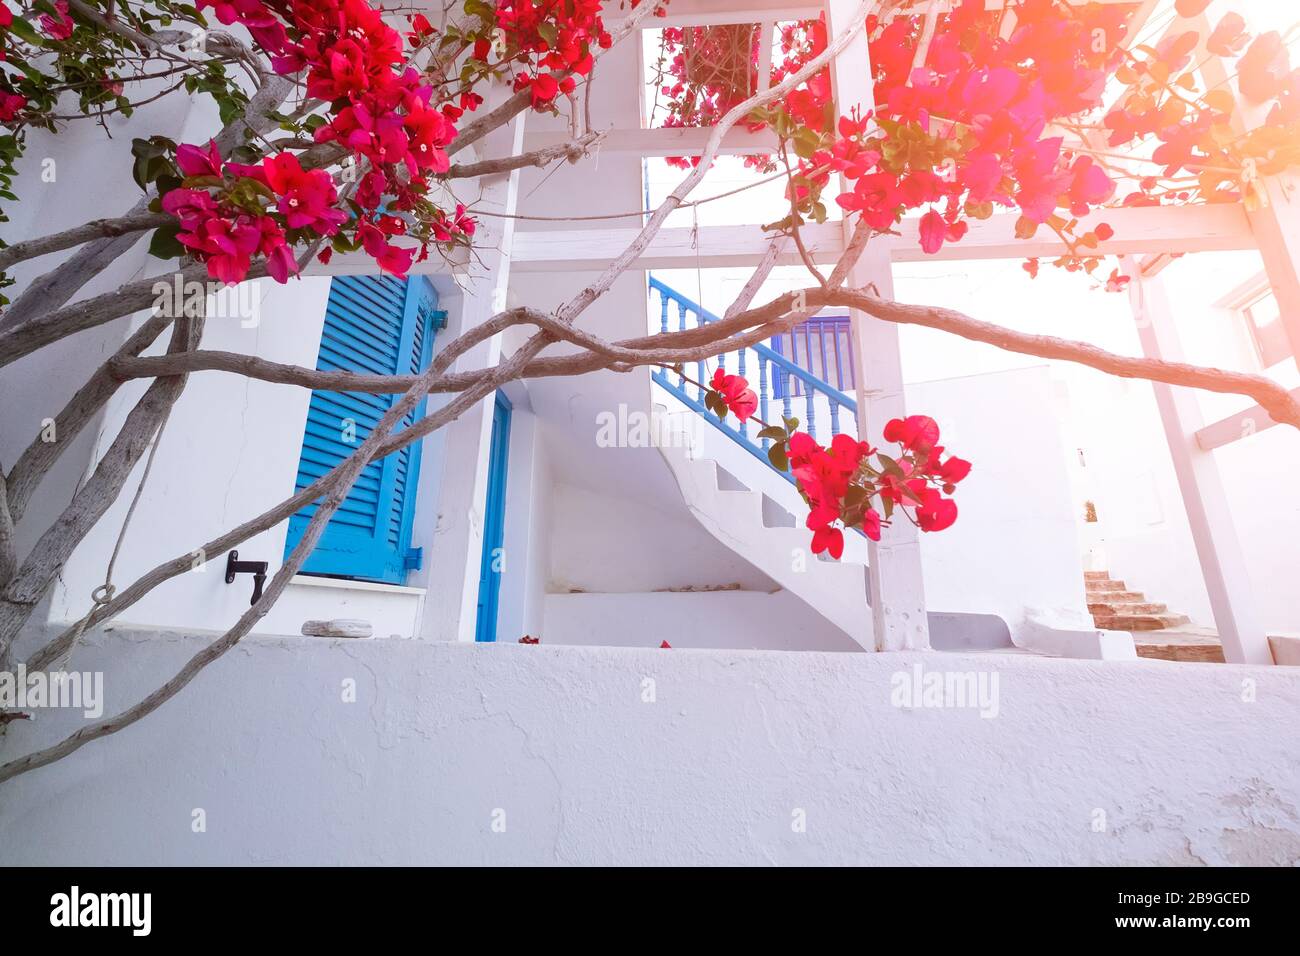 Incredibili stradine di destinazione popolare sull'isola di Paros. Grecia. Architettura tradizionale e colori della città mediterranea. Porte blu, bianco bu Foto Stock